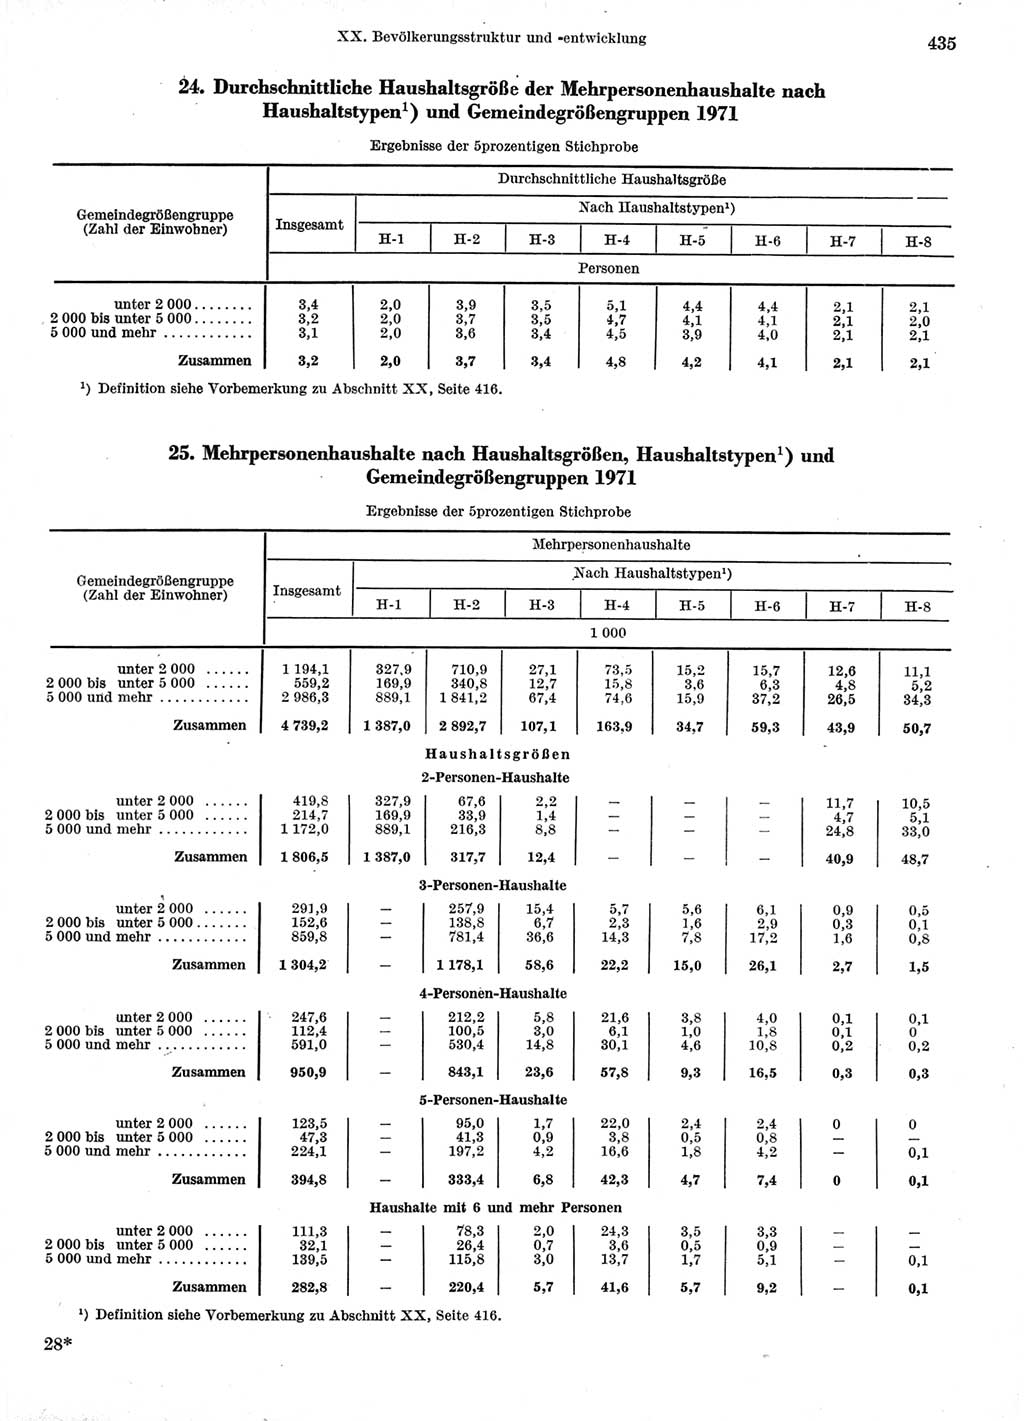 Statistisches Jahrbuch der Deutschen Demokratischen Republik (DDR) 1974, Seite 435 (Stat. Jb. DDR 1974, S. 435)